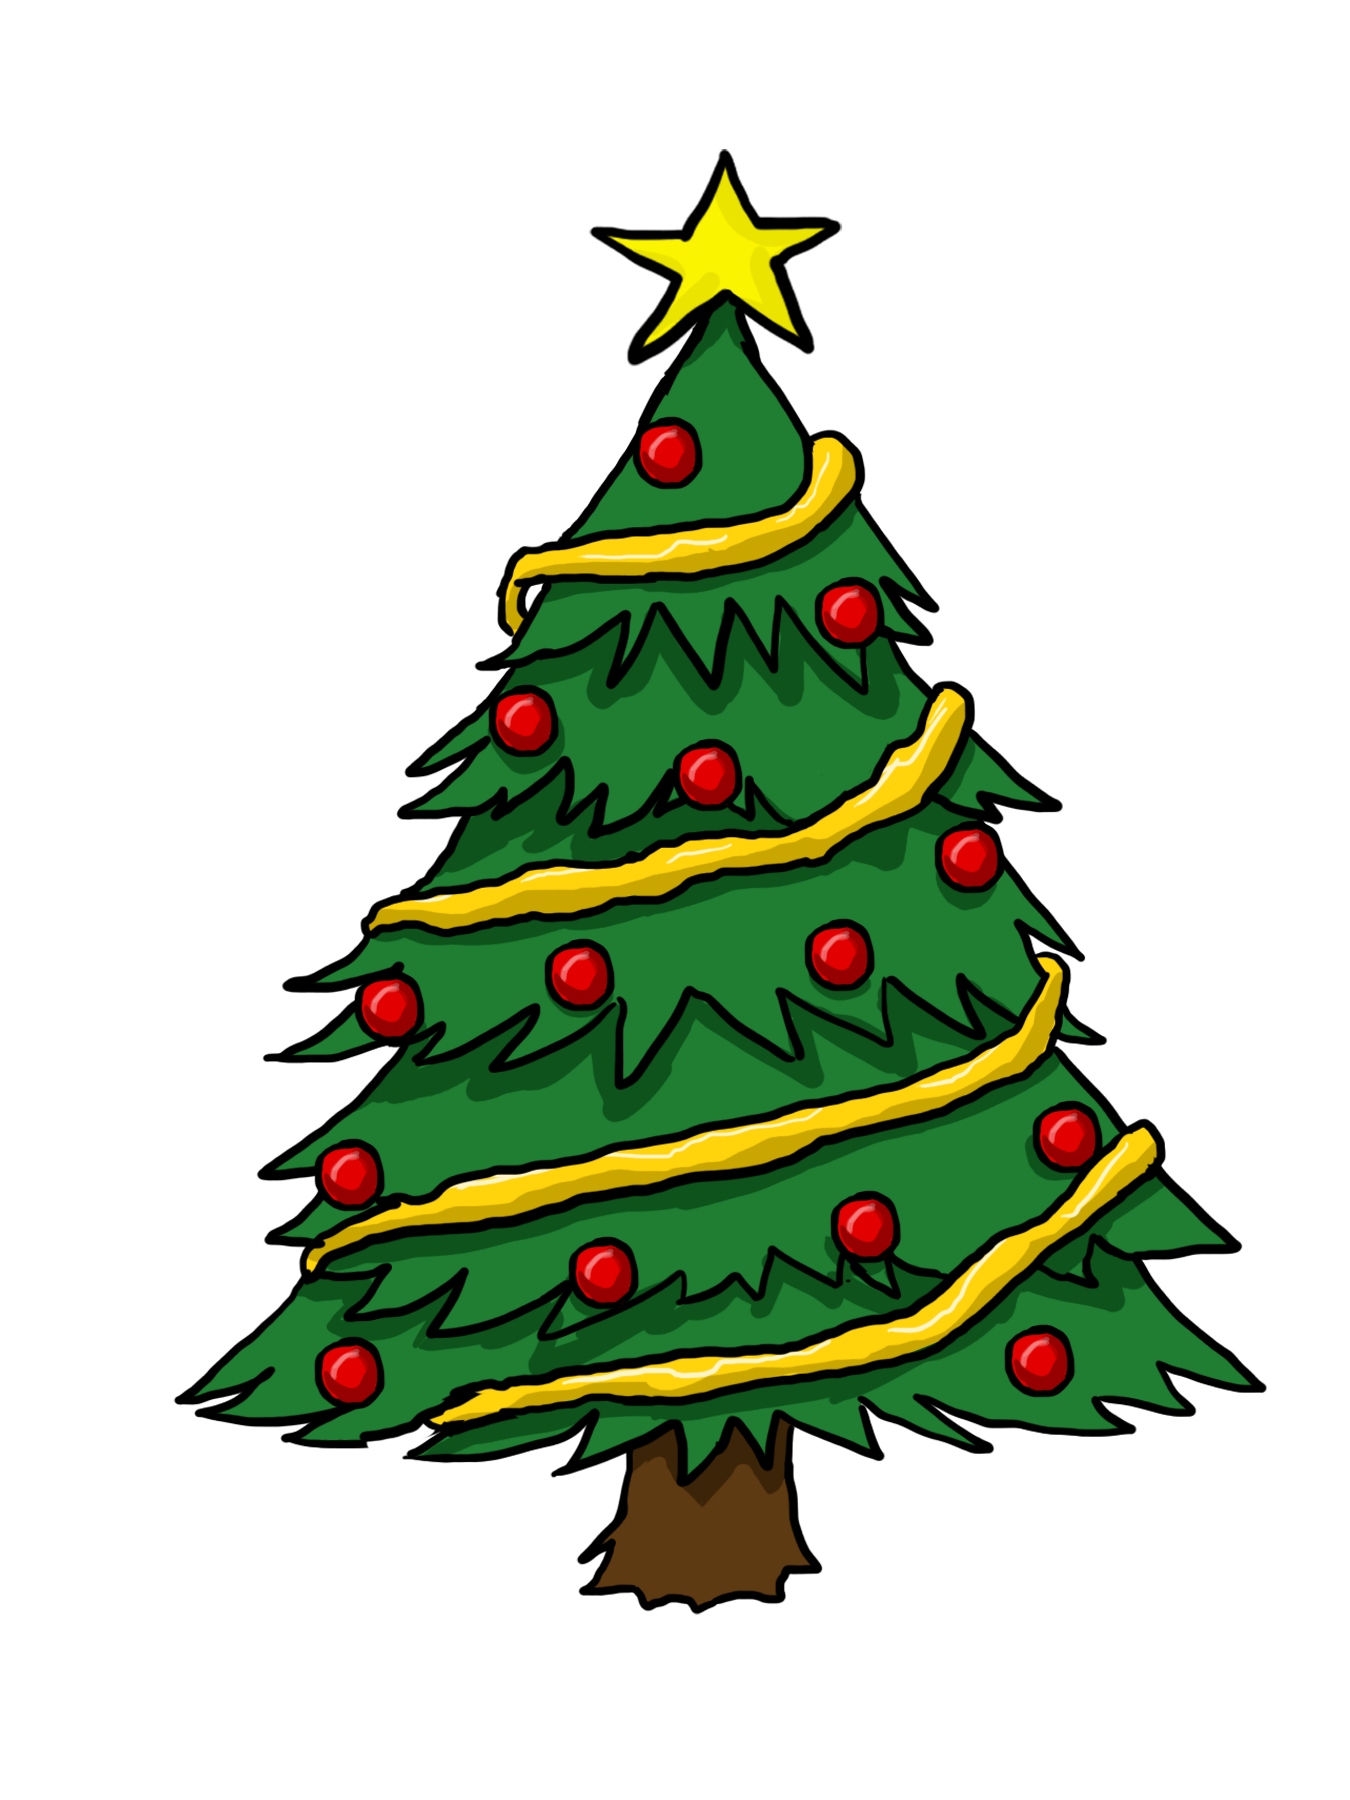 Star on Christmas tree, Chris